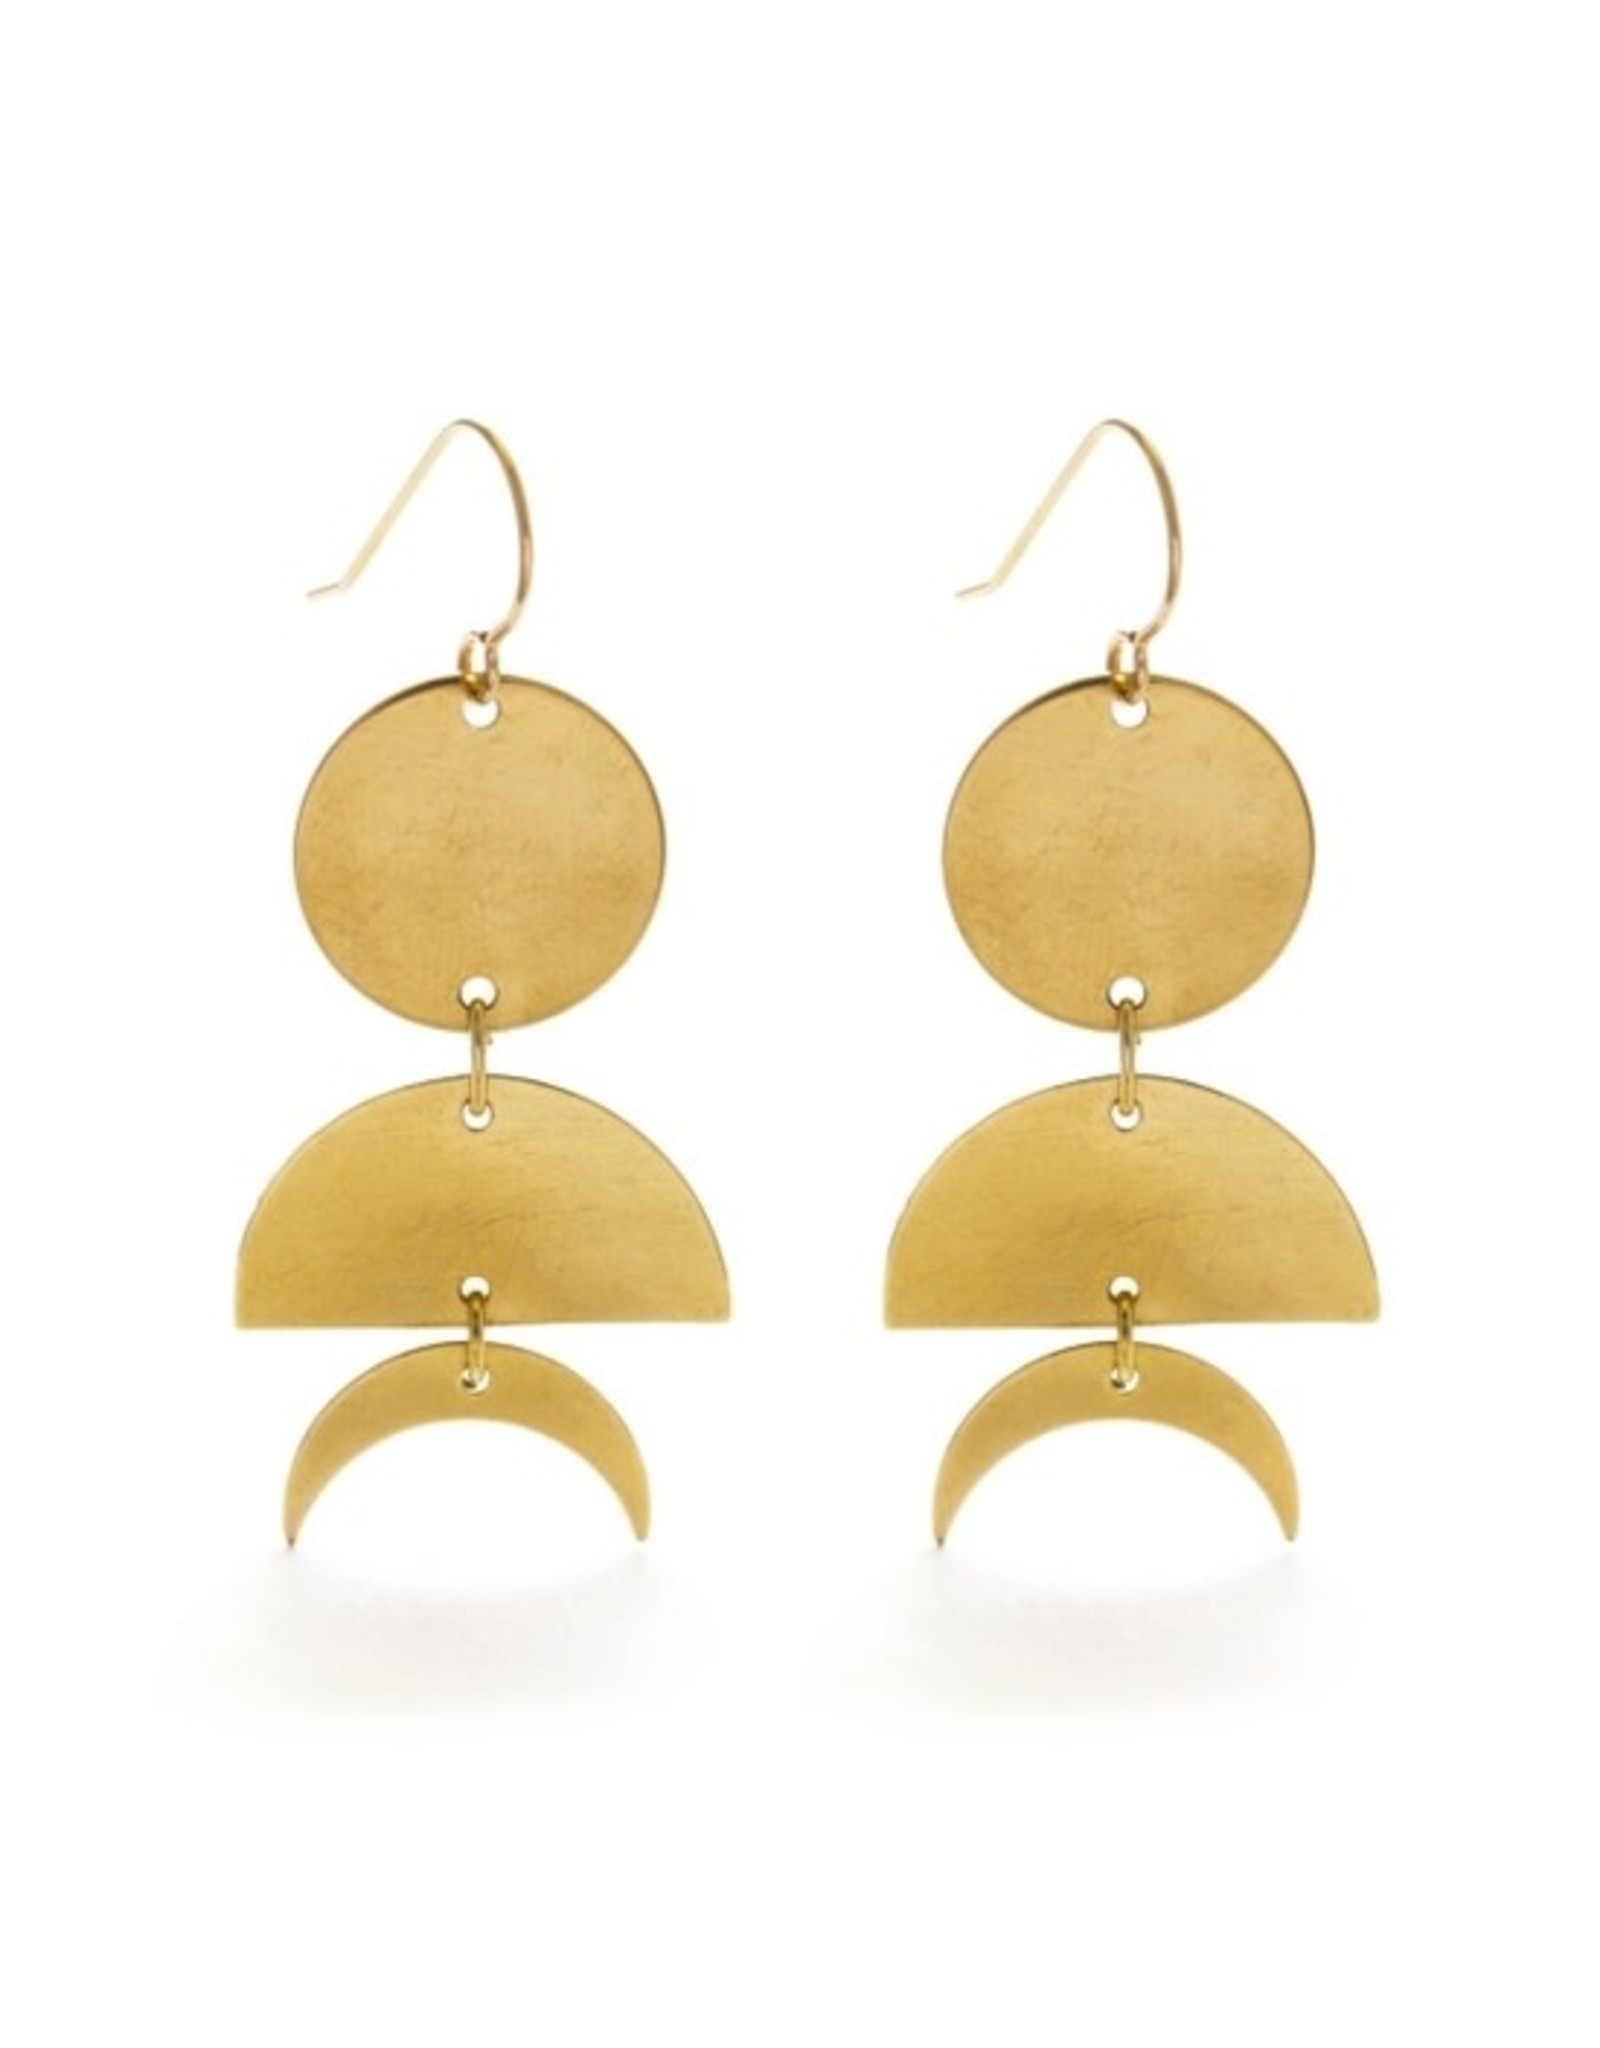 Celestial Geometry Earrings - 14k Gold Posts